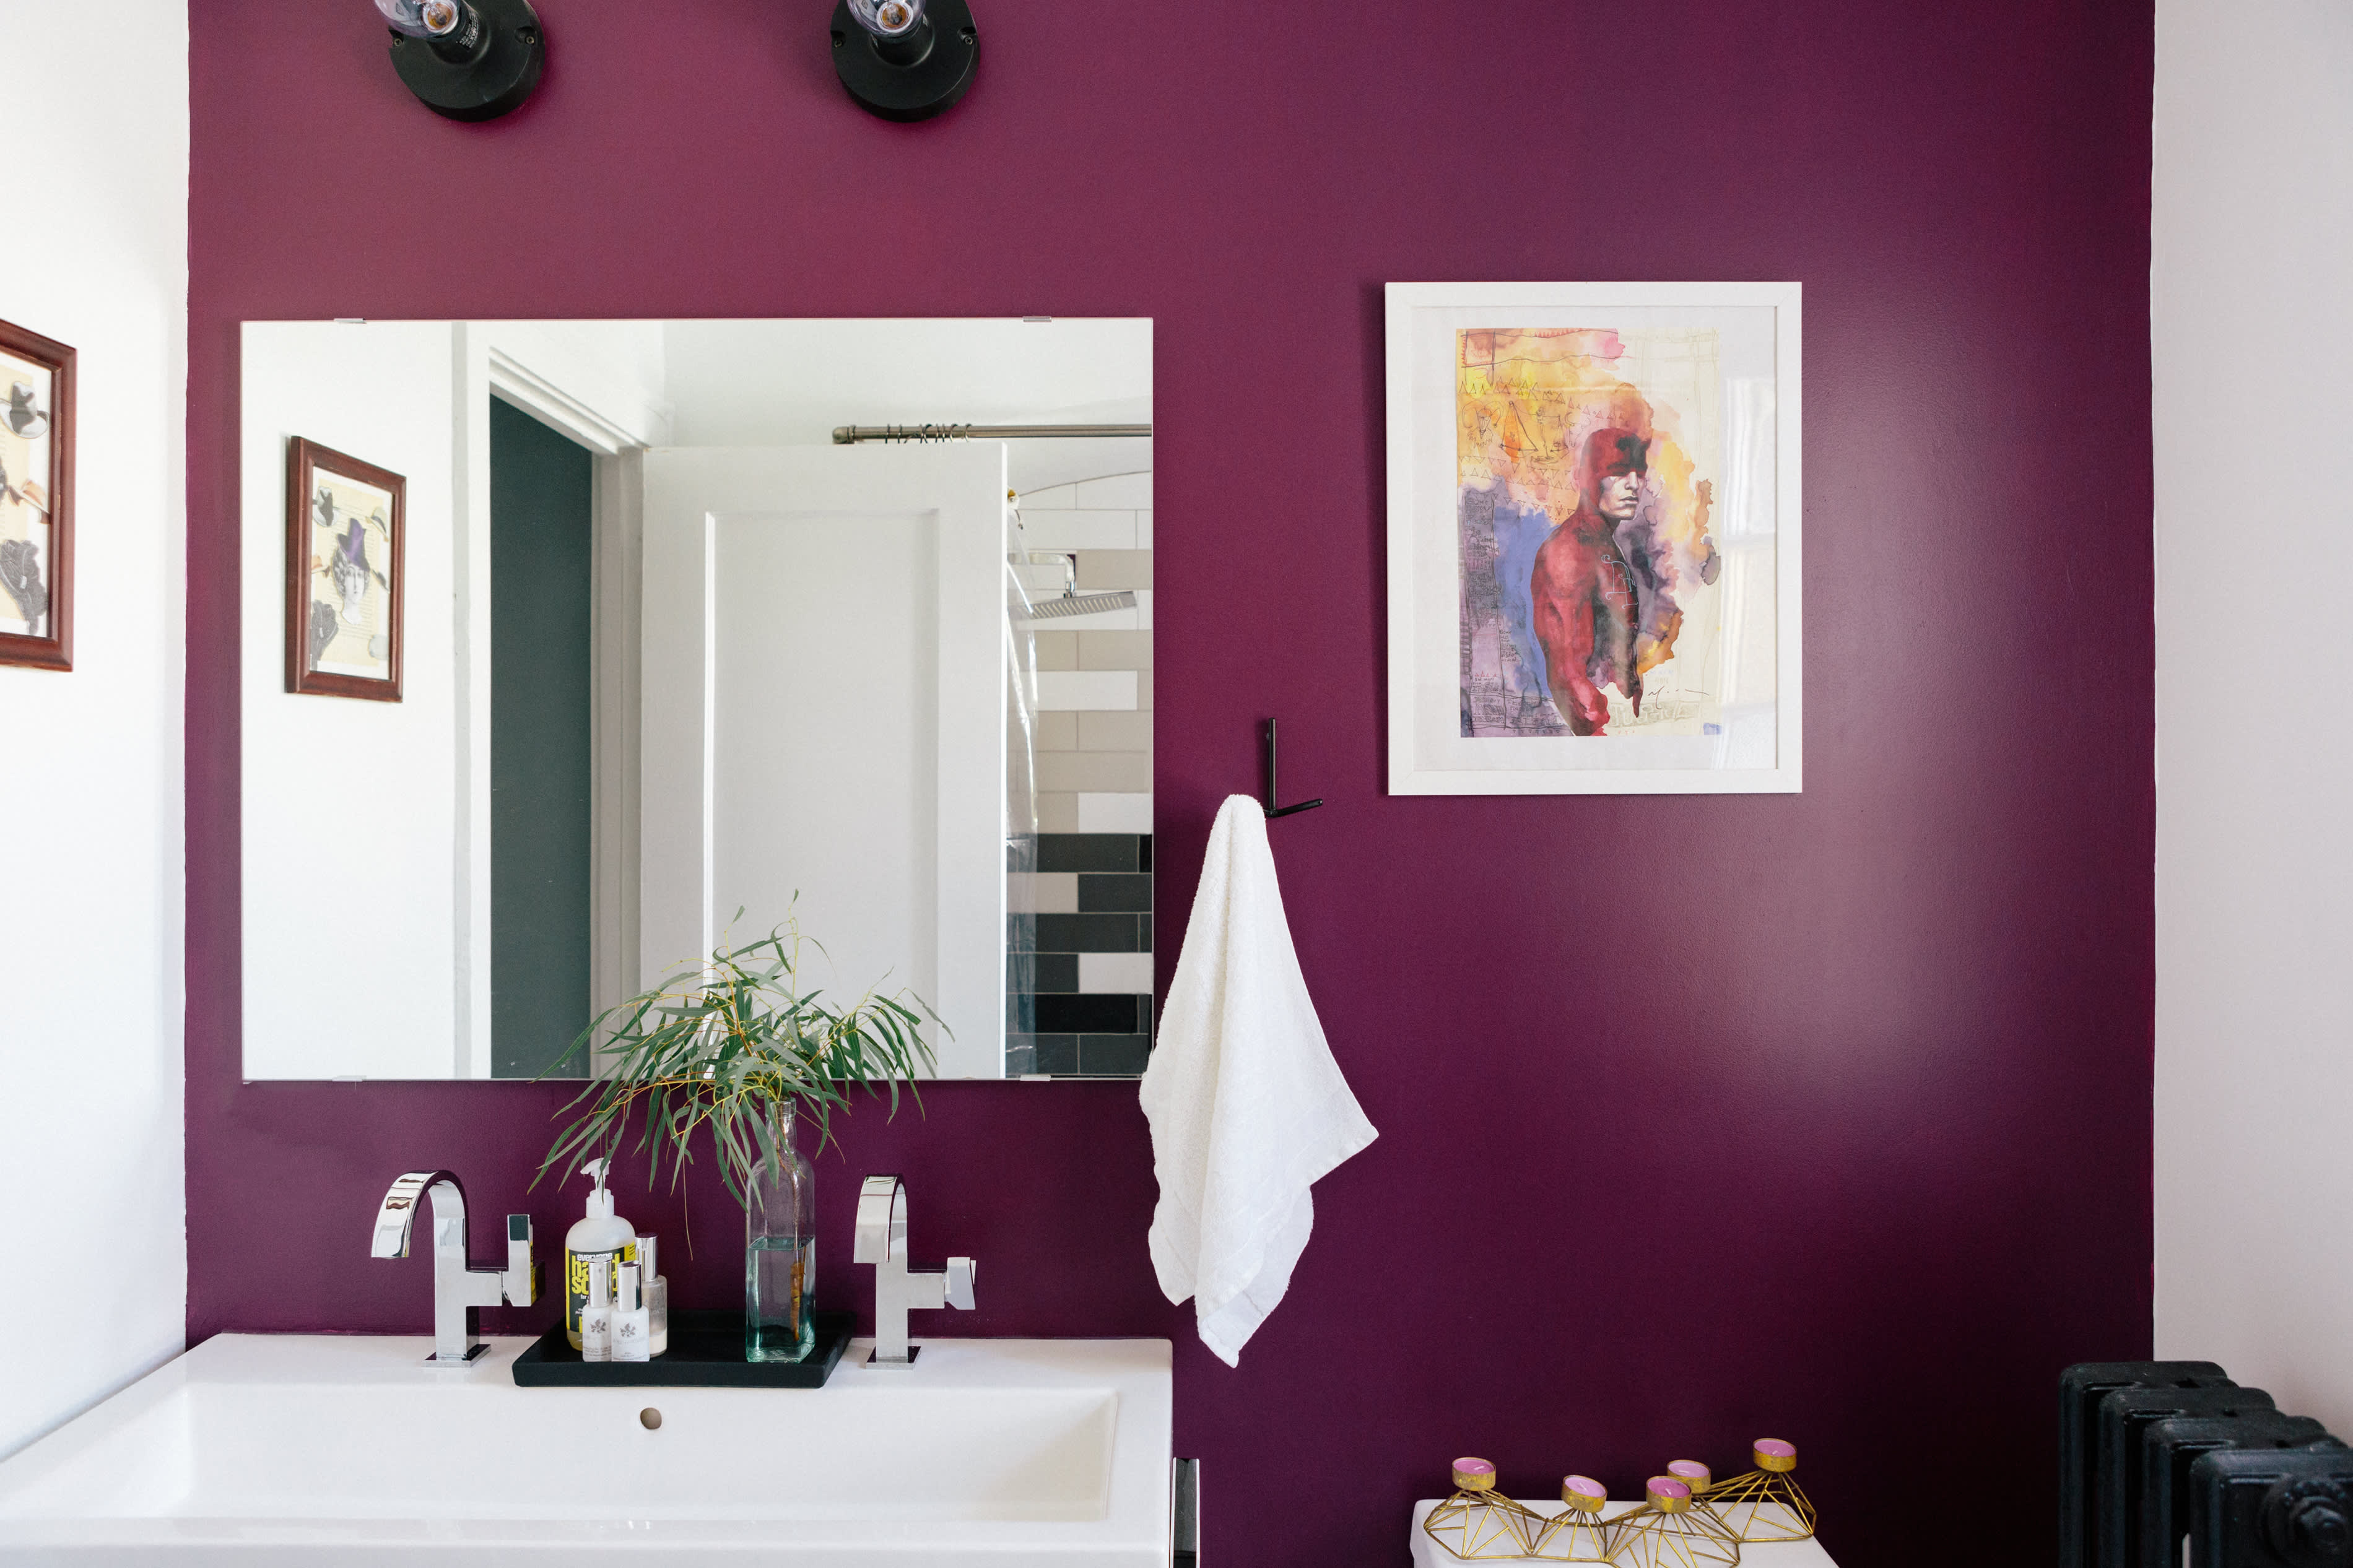 Rose dust by Benjamin Moore  Painting bathroom, Framed bathroom mirror,  Paint colors